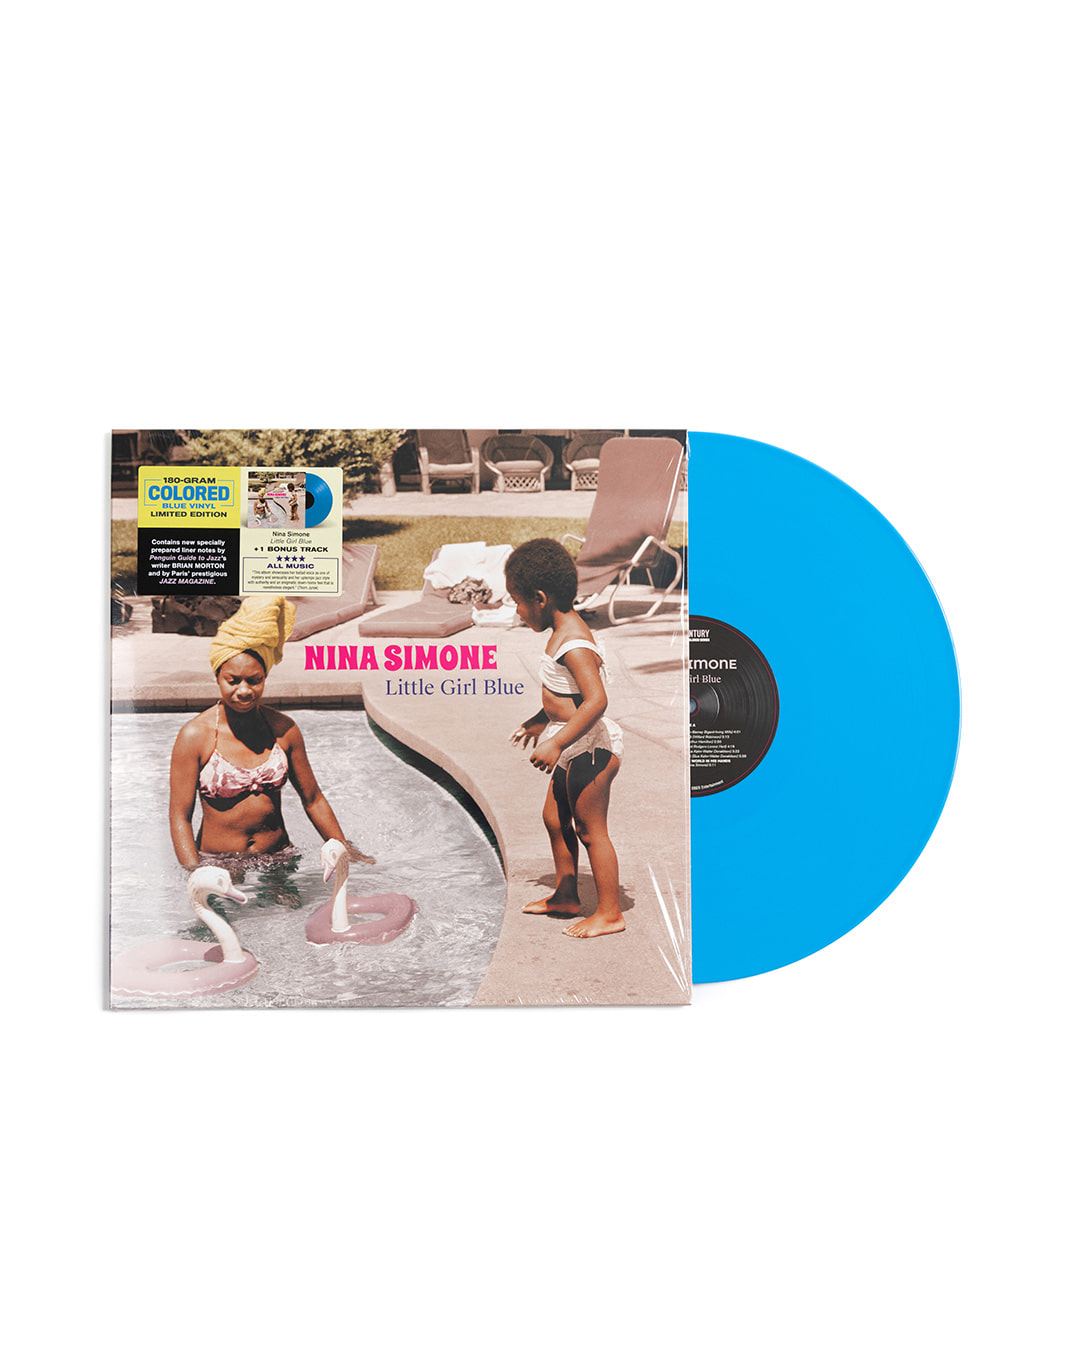 NINA SIMONE - LITTLE GIRL BLUE (blue disc)